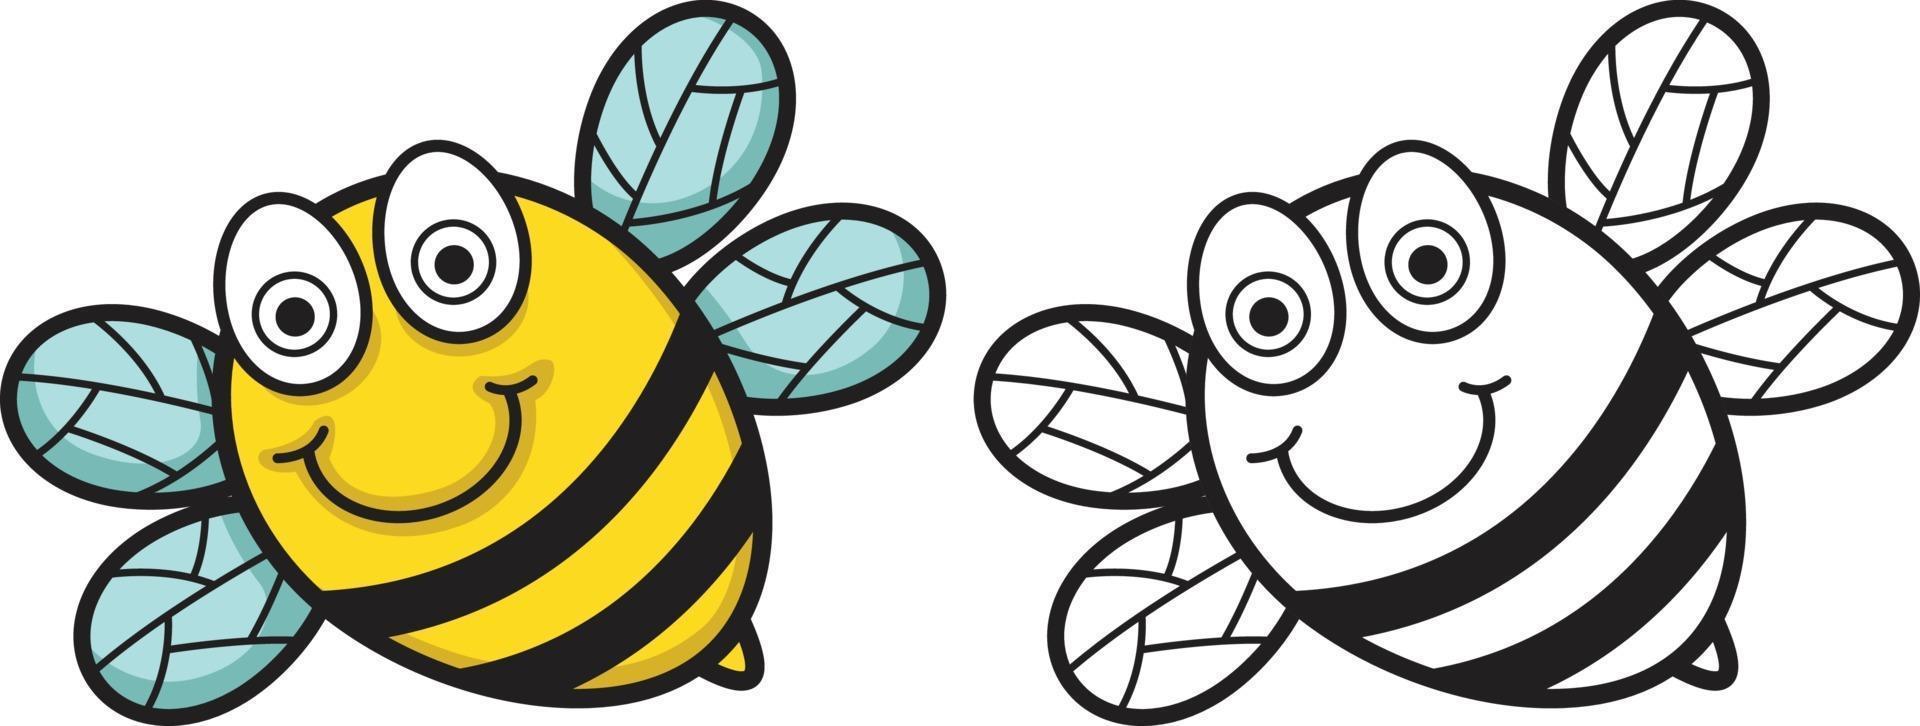 abeille colorée et noire et blanche pour livre de coloriage vecteur